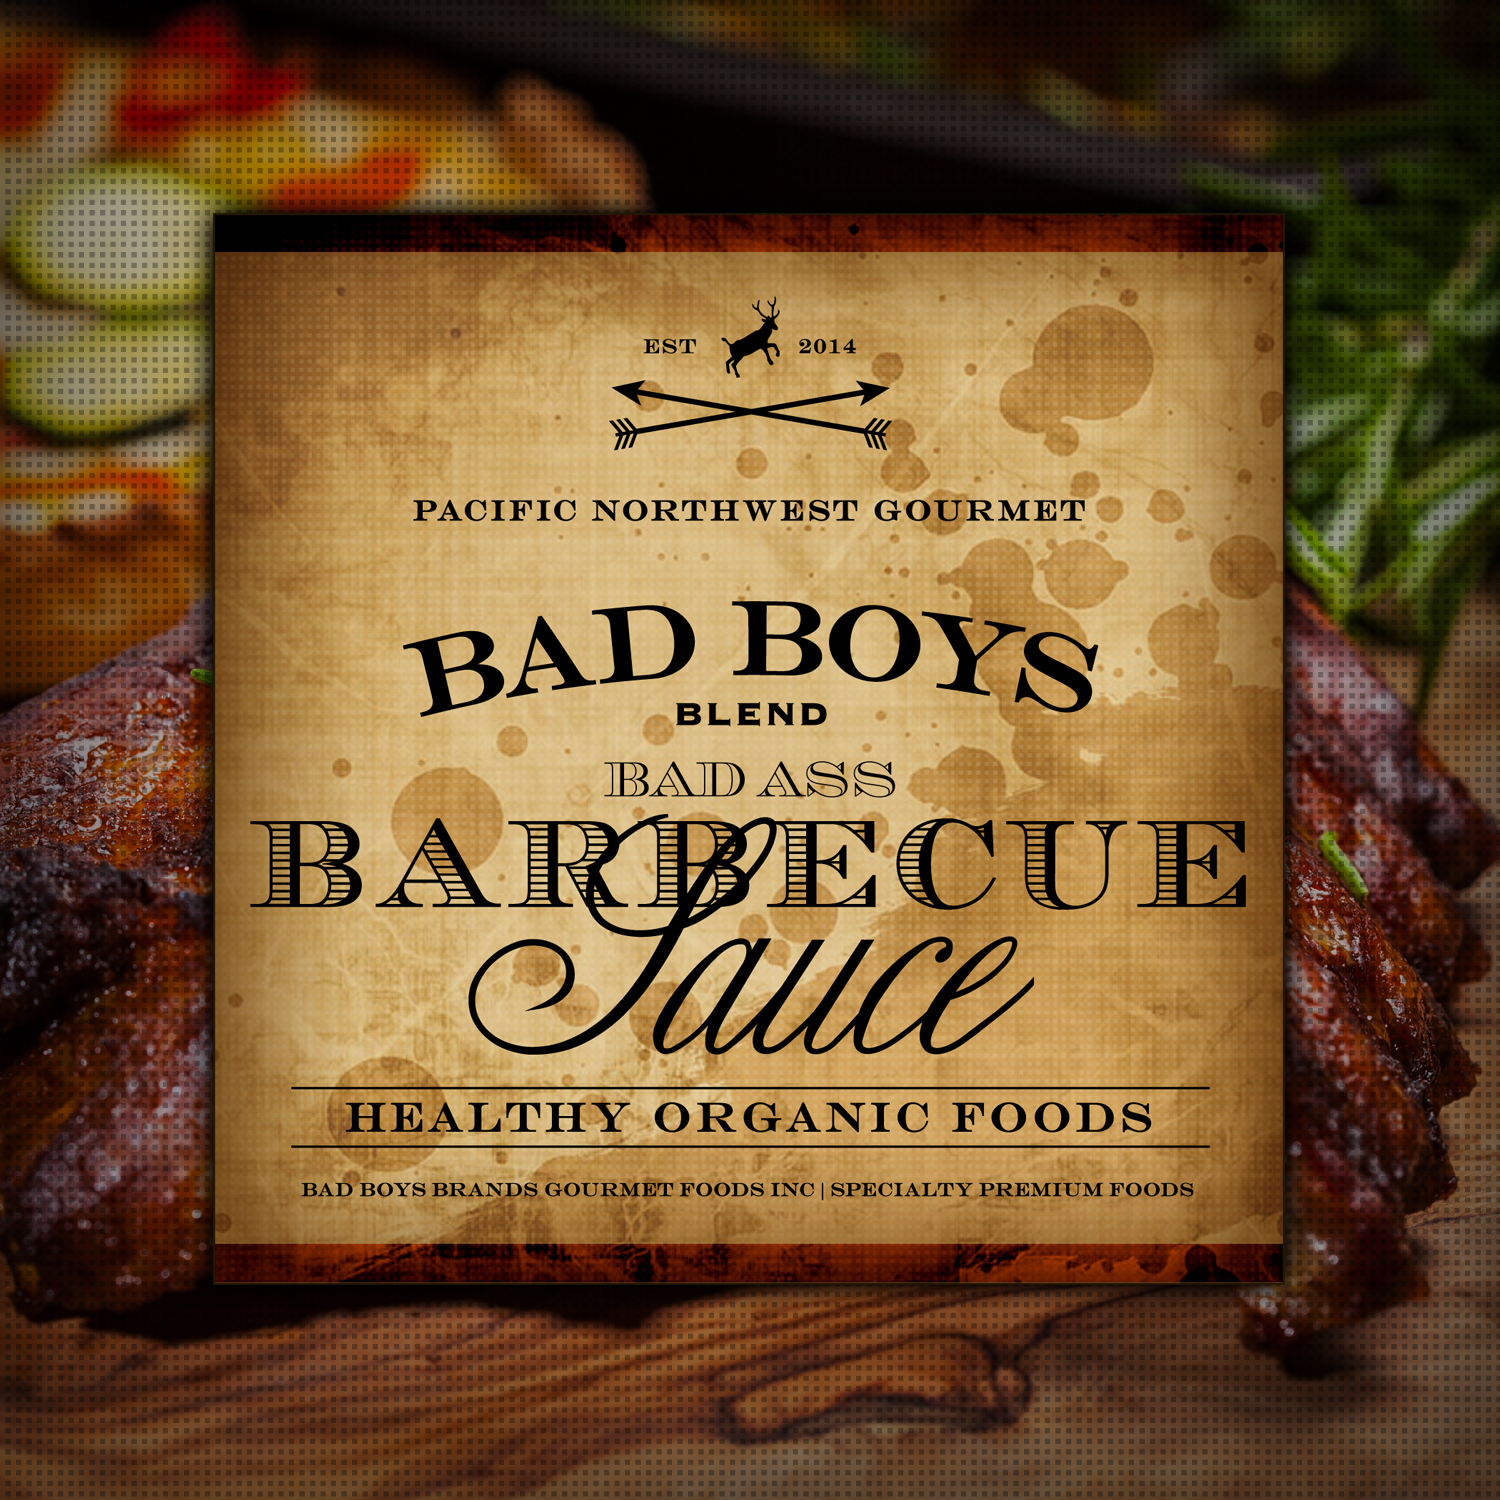 Bad Boys Blend Barbecue [v2] Sauce [tm] by Graham Hnedak 24 SEPT 2014.jpg